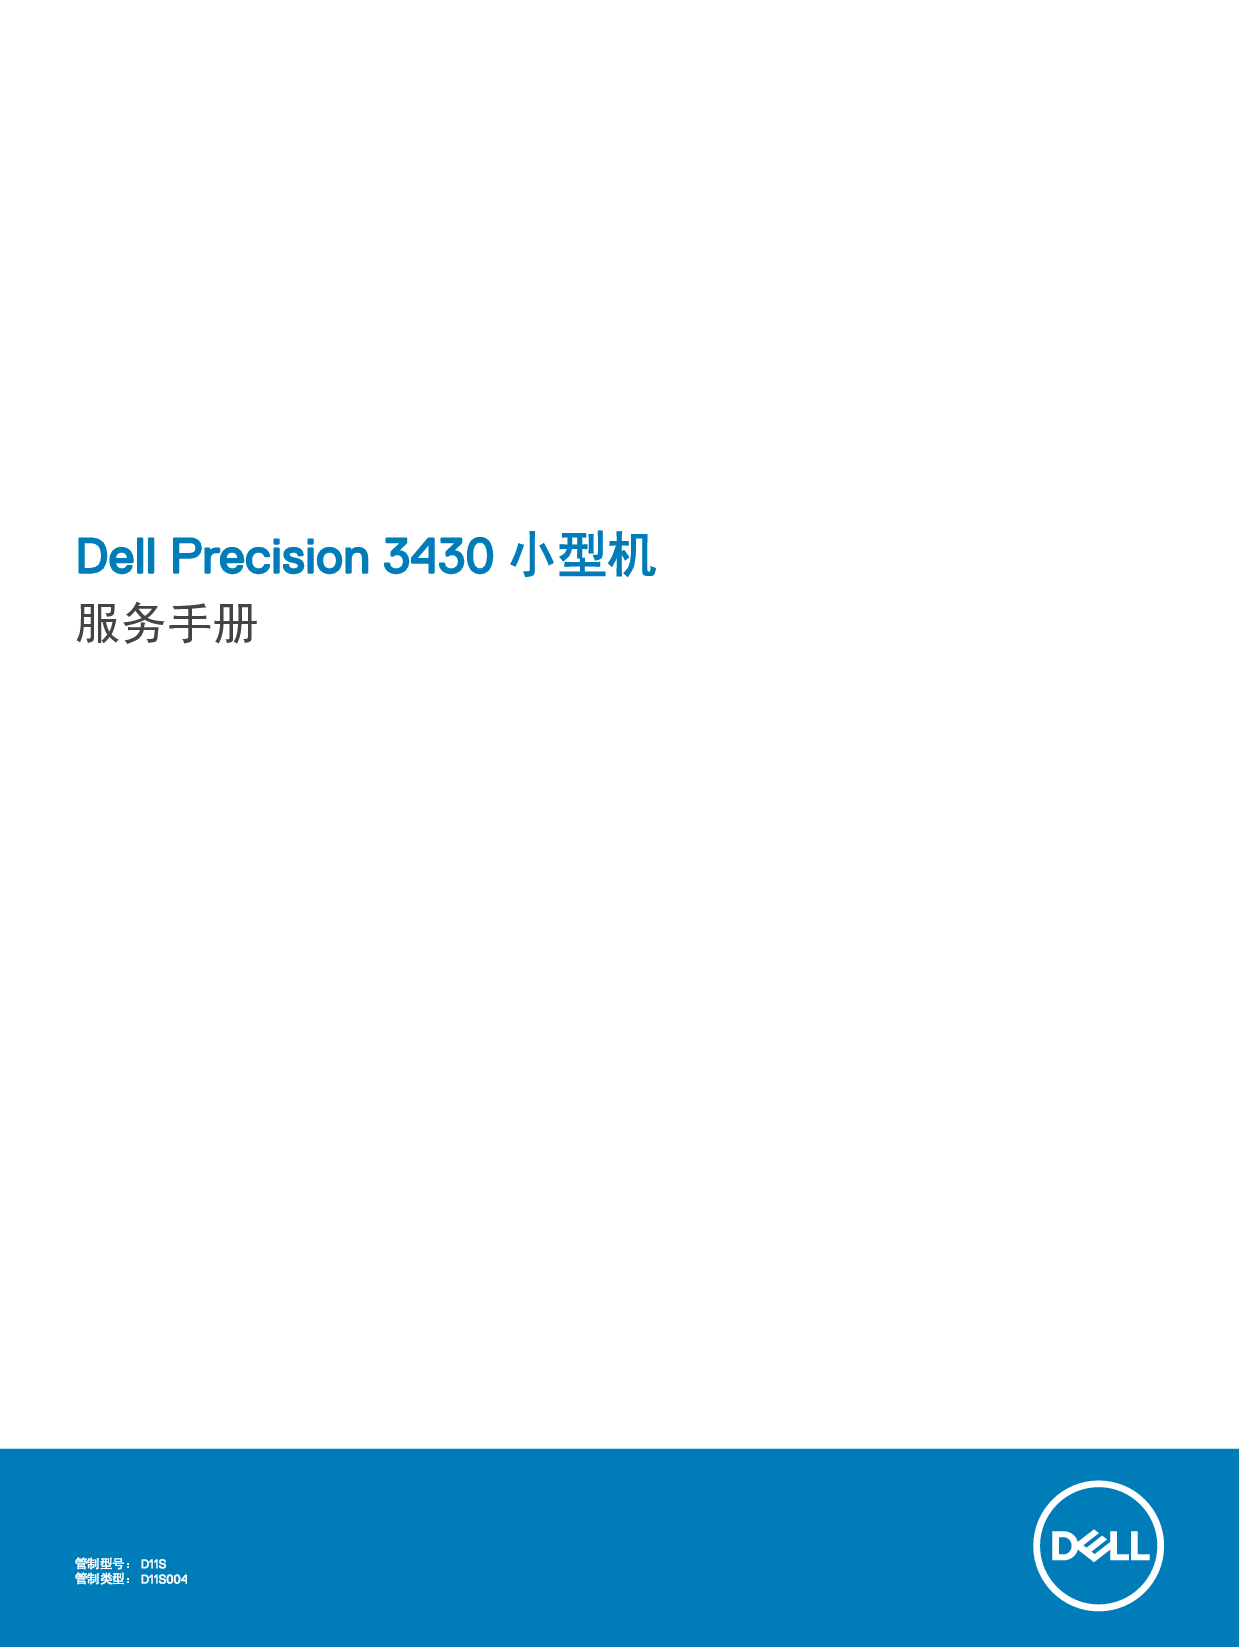 戴尔 Dell Precision 3430 维修服务手册 封面